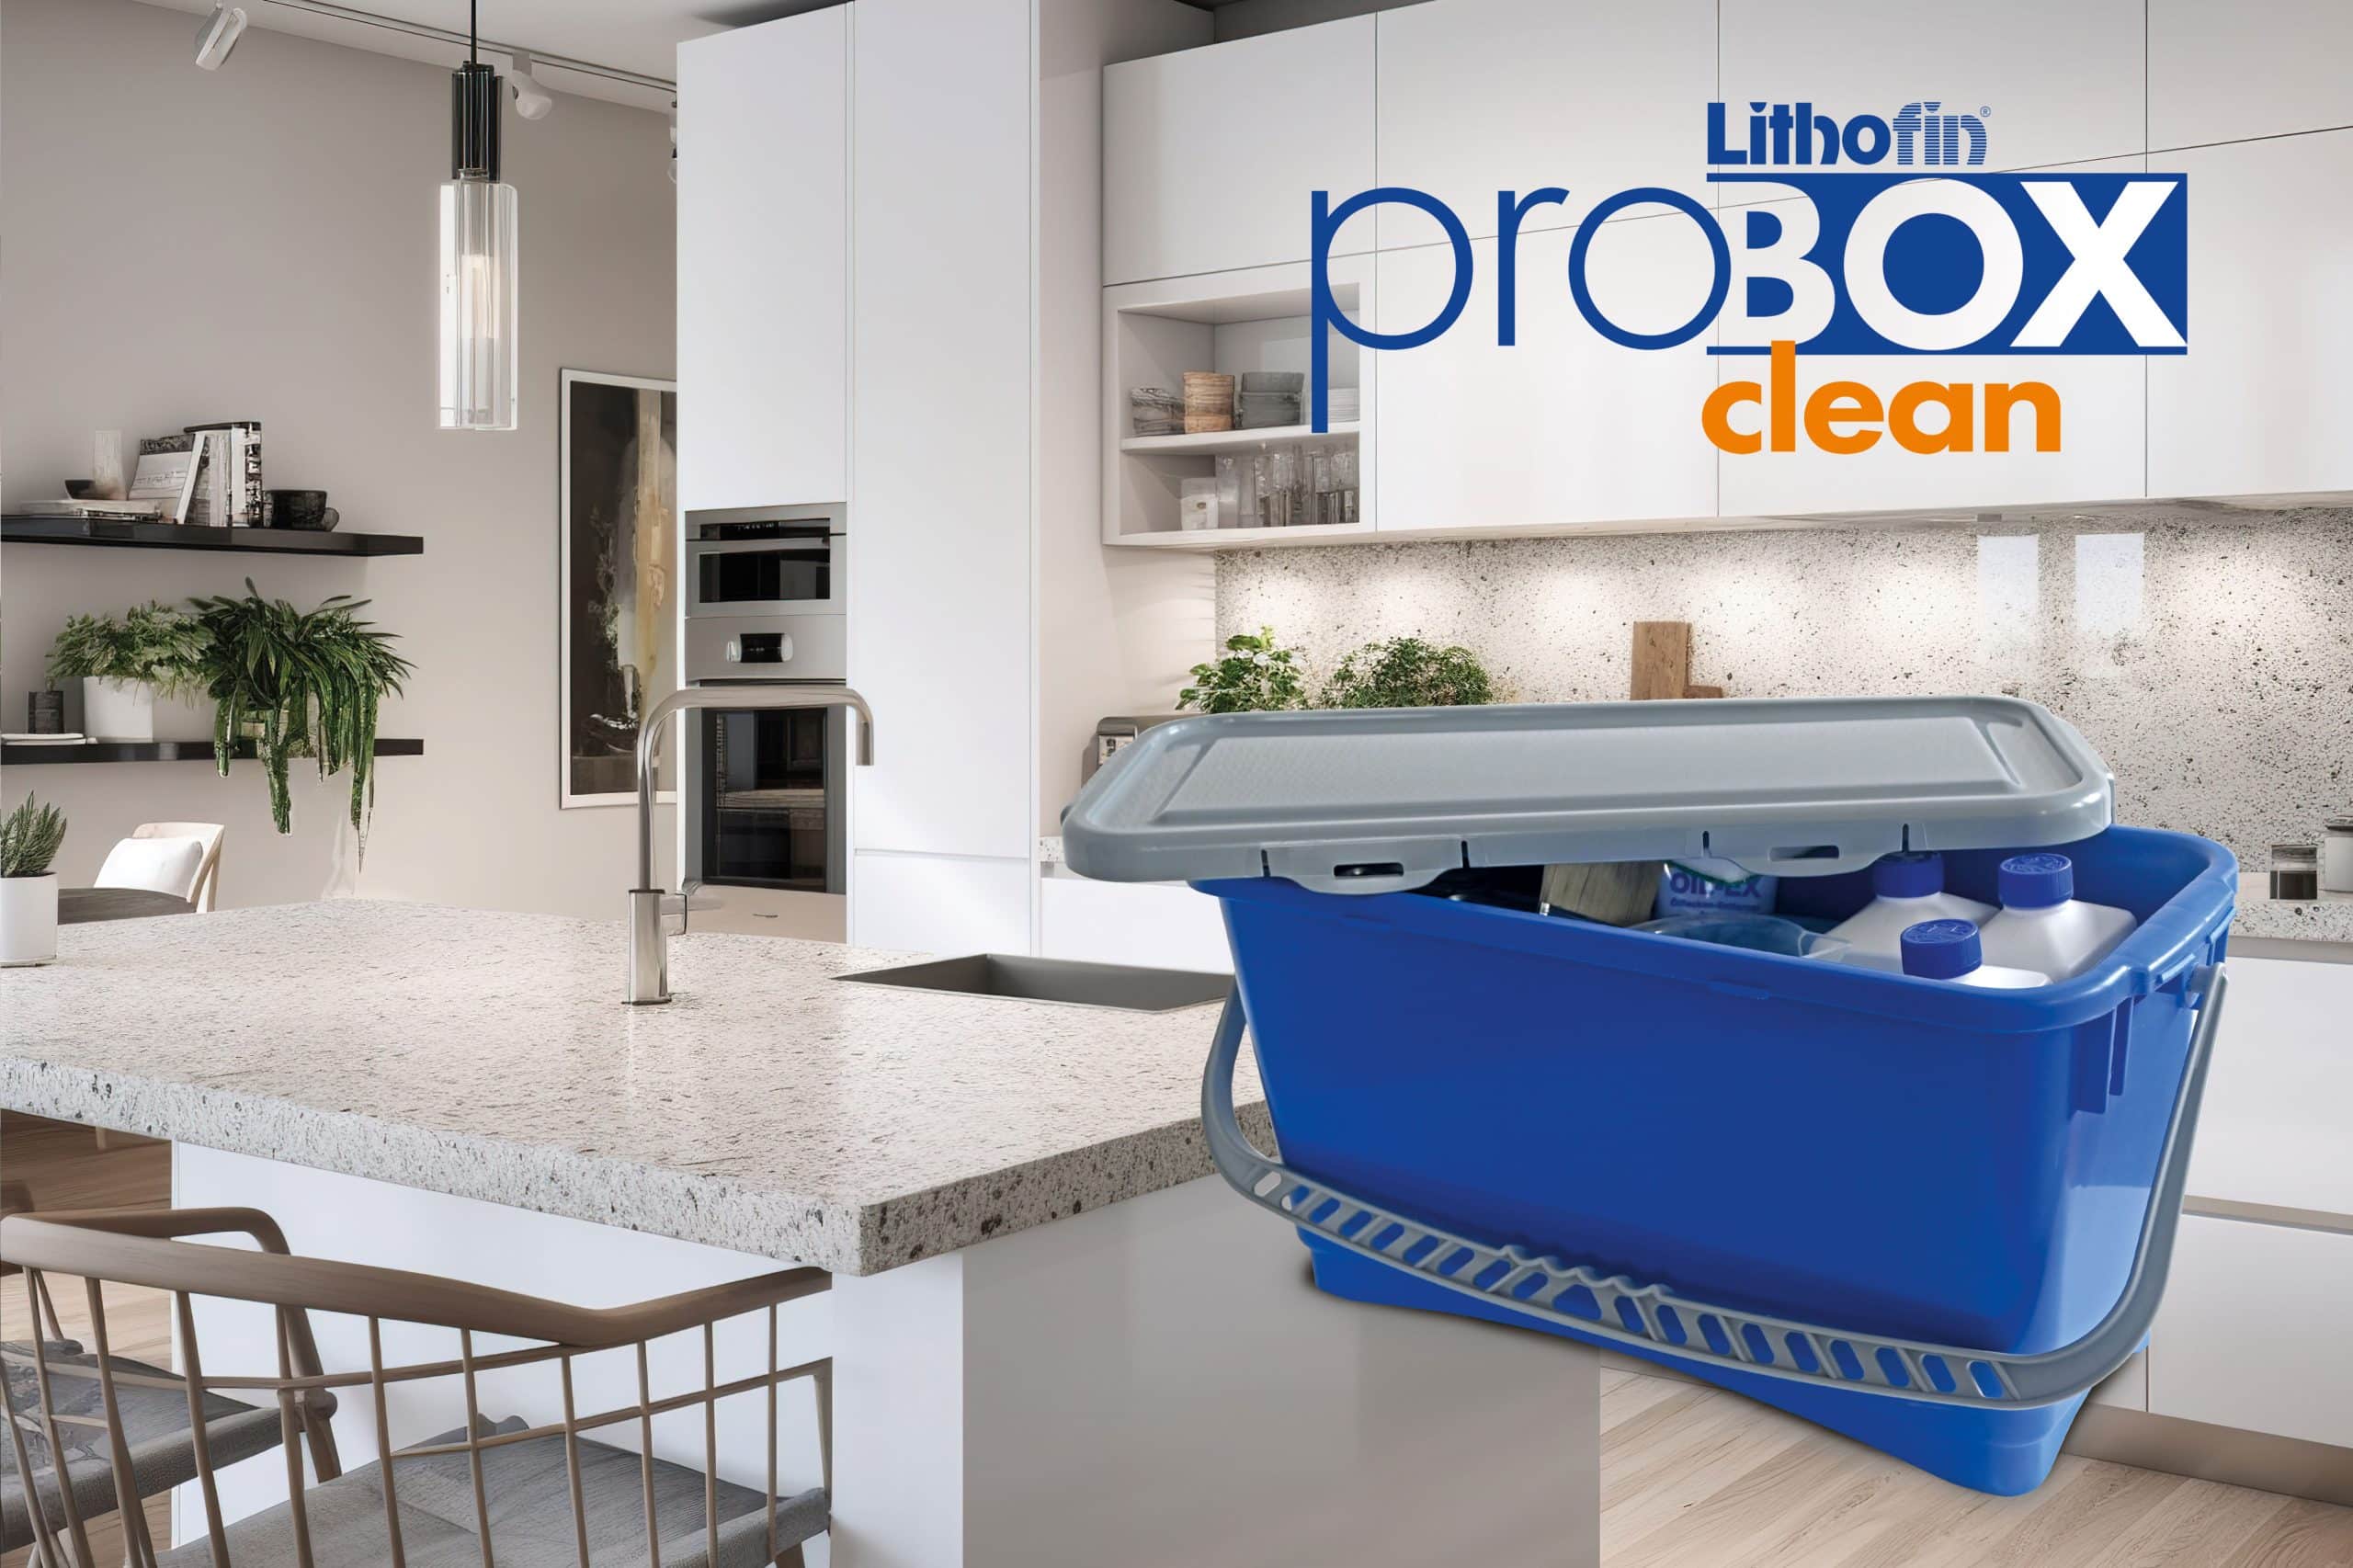 Mit der Lithofin ProBox clean können Kücheninstallateure im After Sales-Service oder beim Einbau der Küchenarbeitsplatte Flecken schnell beseitigen